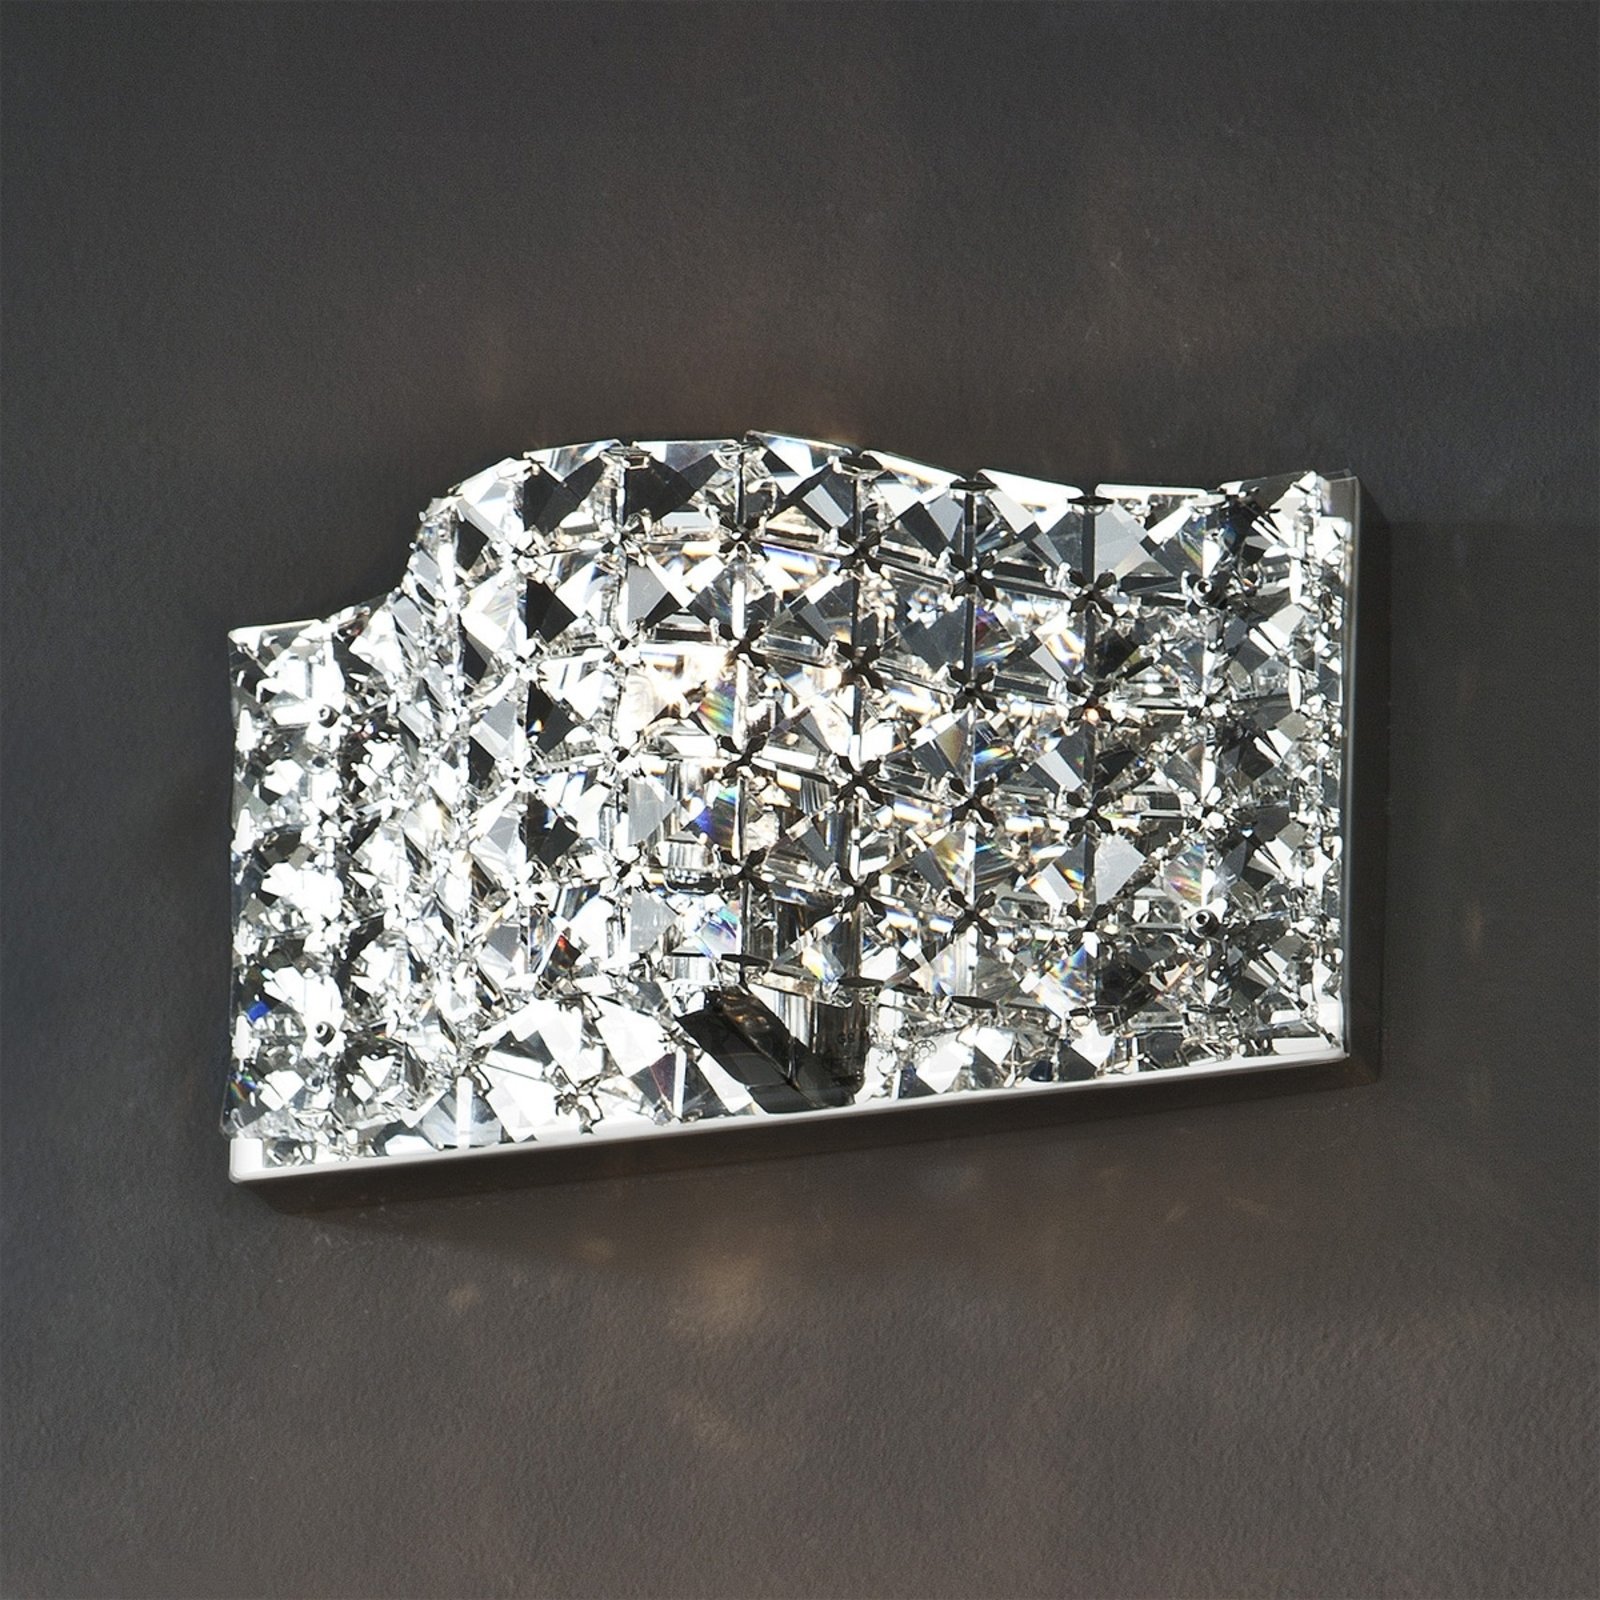 Vegglampe Onda, krystall, 25 cm